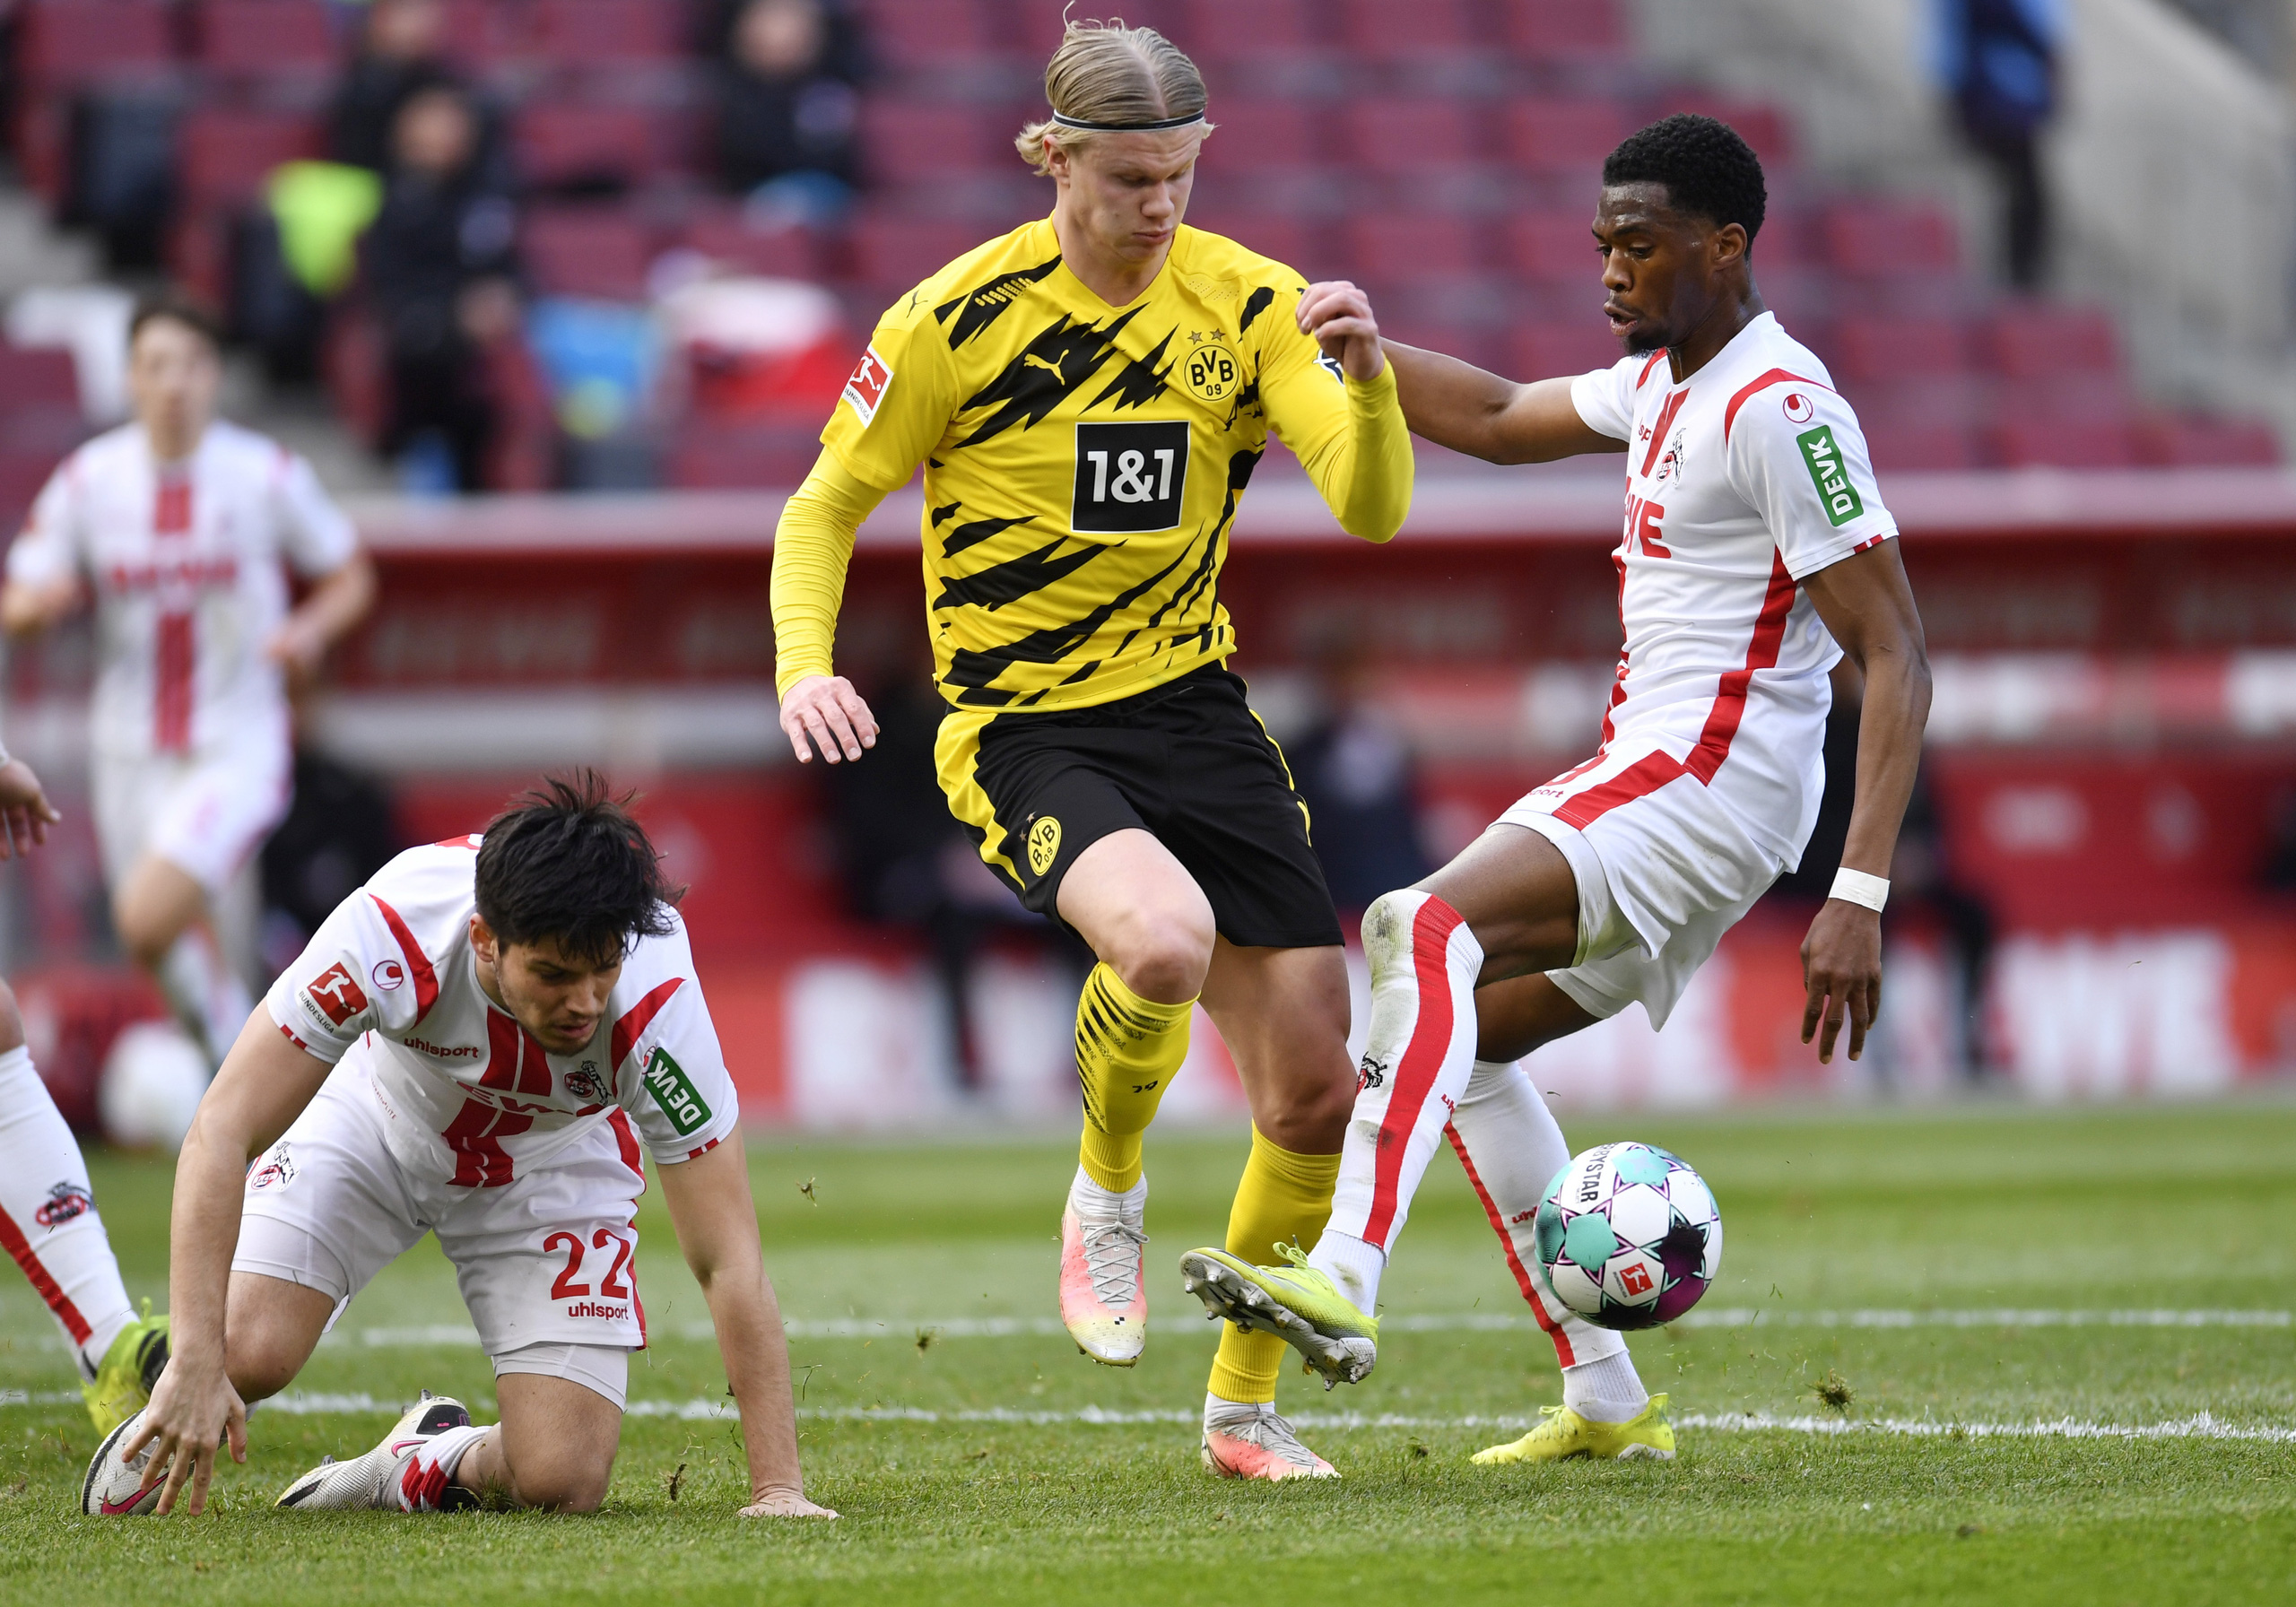 HLV Dortmund nói rằng chấn thương của Haaland không quá nghiêm trọng